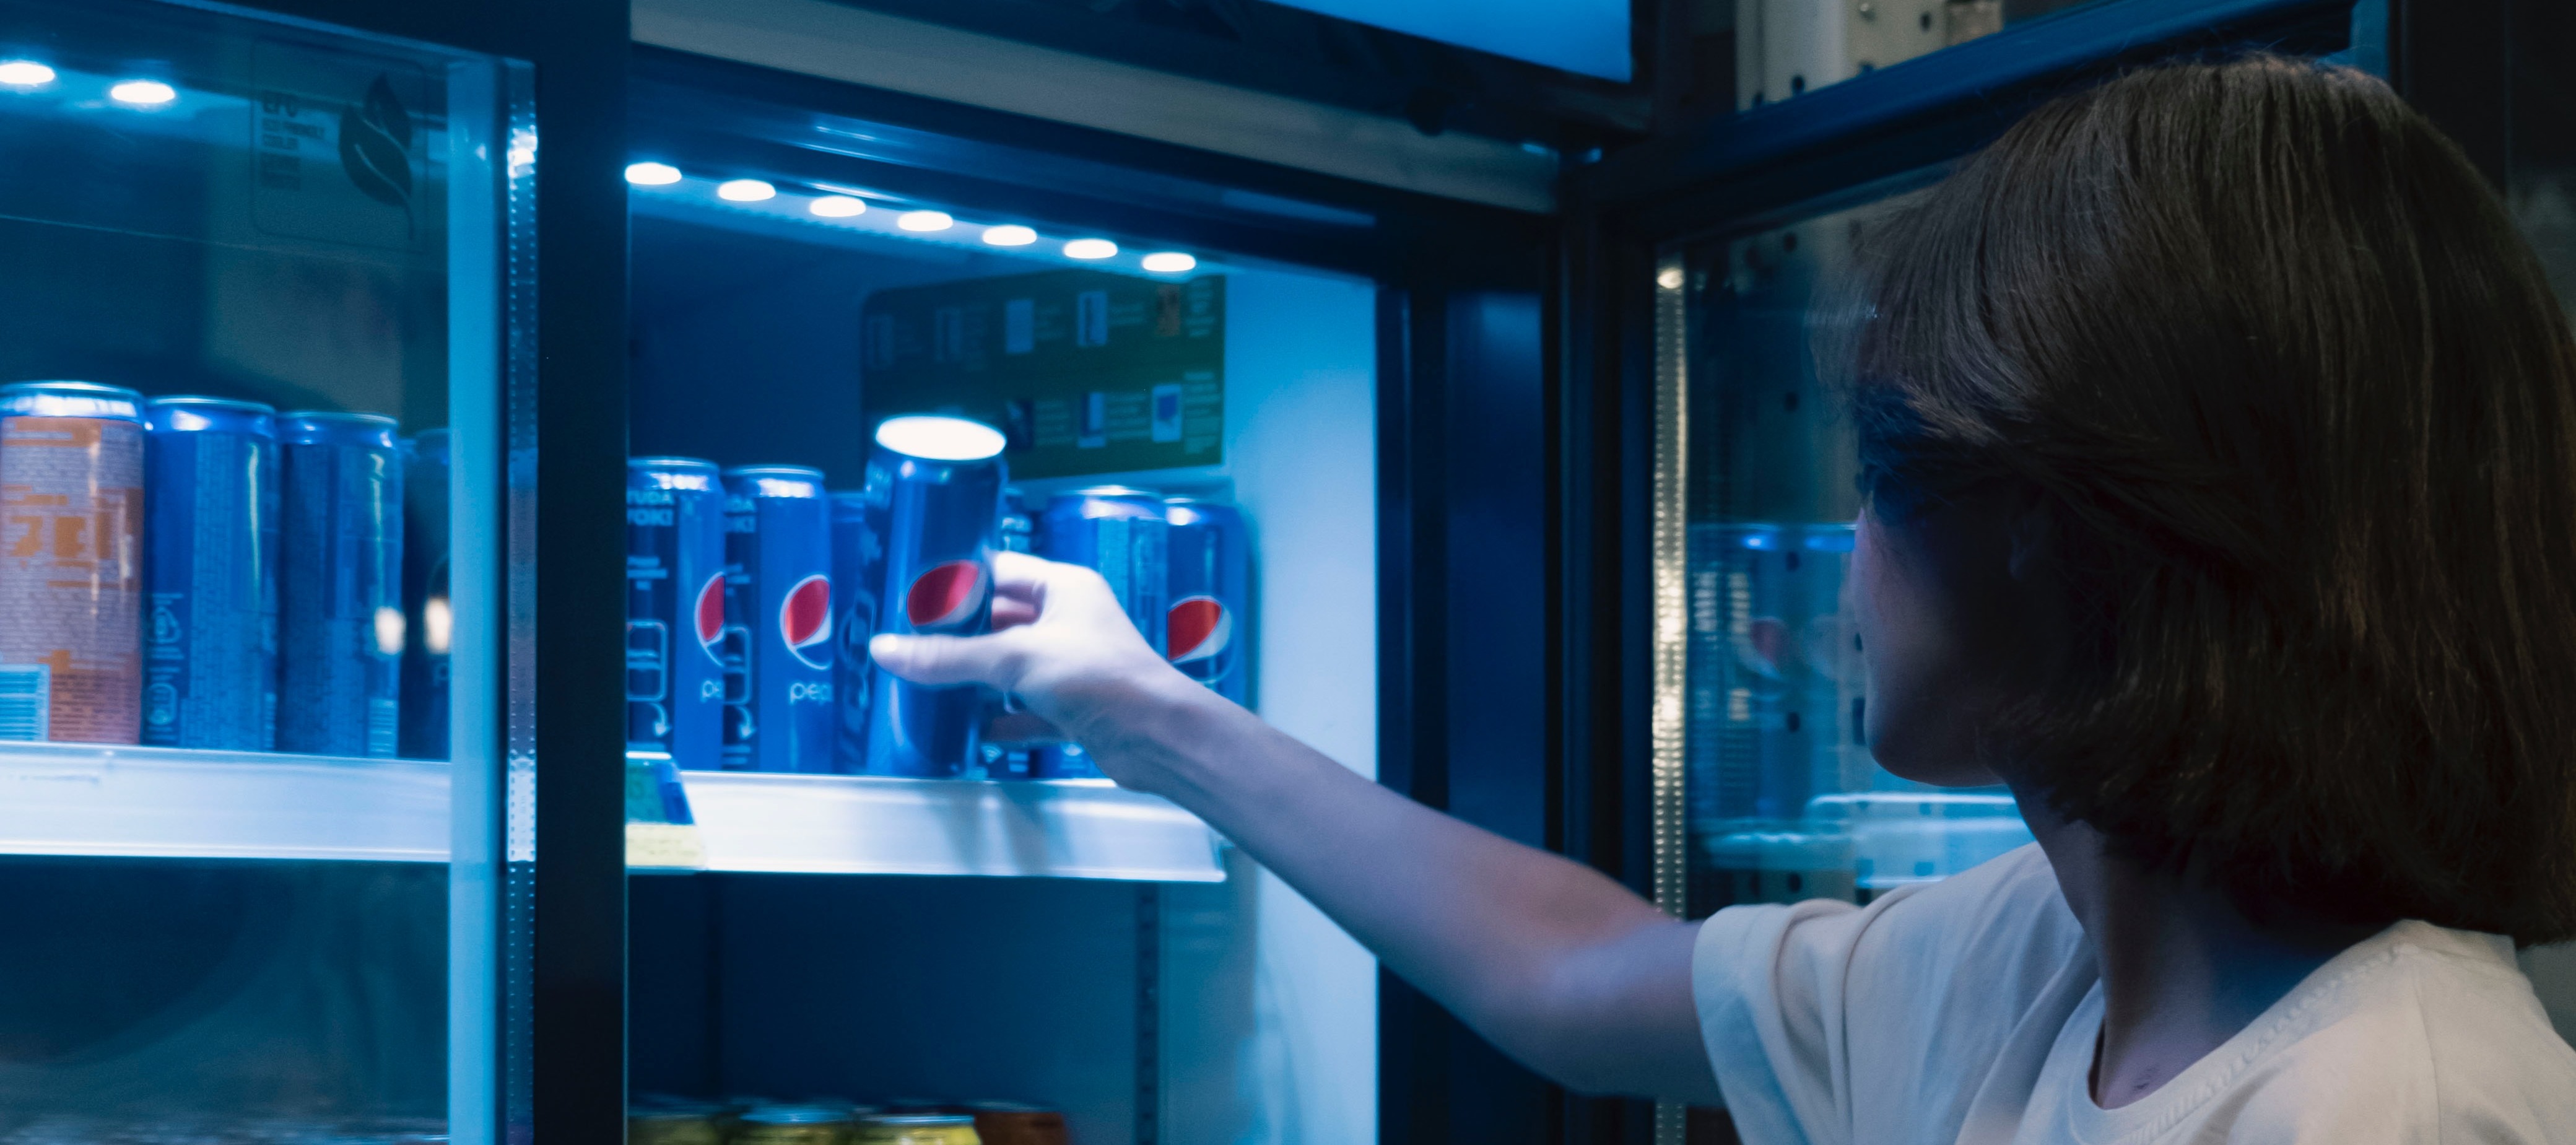 Фото новости: "Coca-Cola и PepsiCo проведут ребрендинг своих холодильников в российских магазинах"